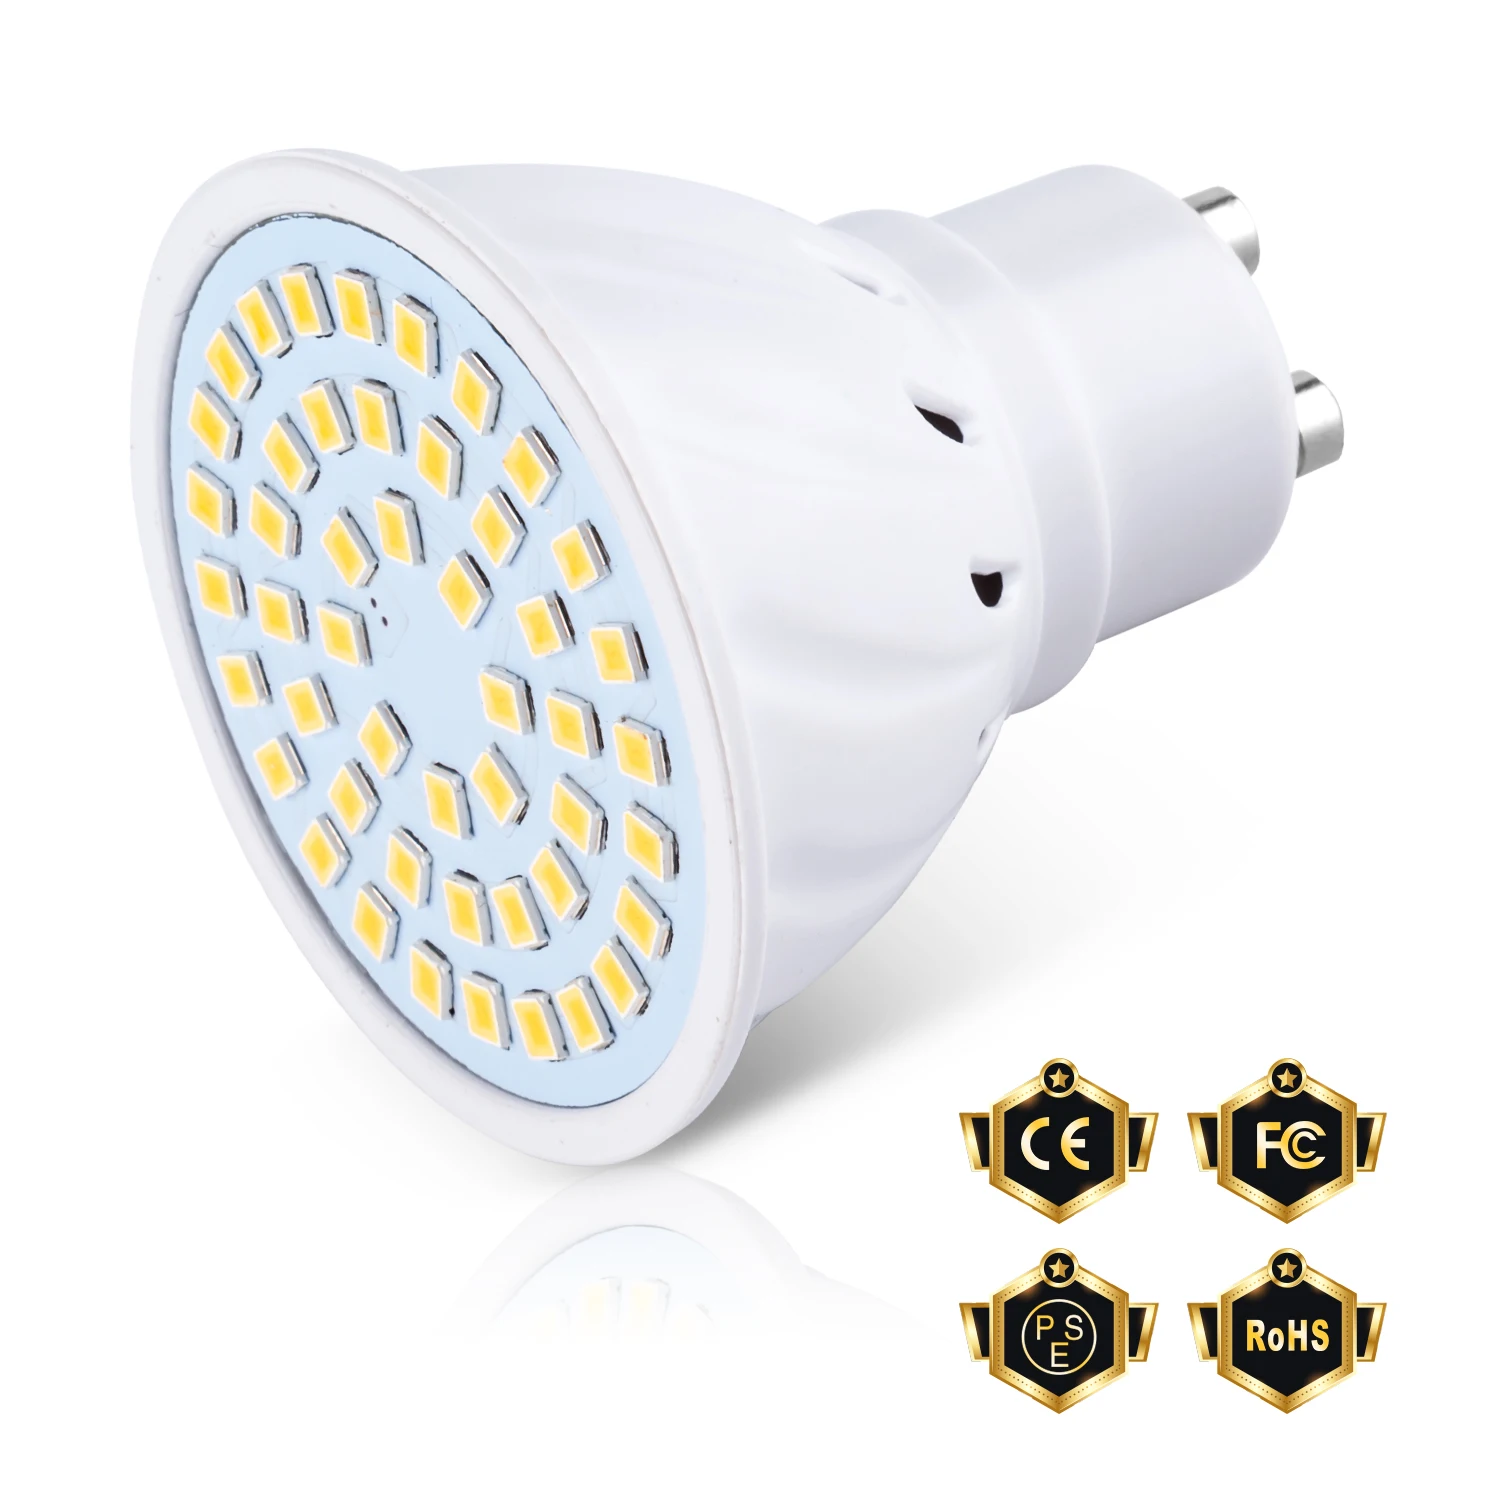 

GU10 LED Lamp E27 Bulb MR16 LED Light E14 Bombillas 2835 B22 Corn Light 220V Spotlight 3W 5W 7W LED For Closet Bathroom Lampara